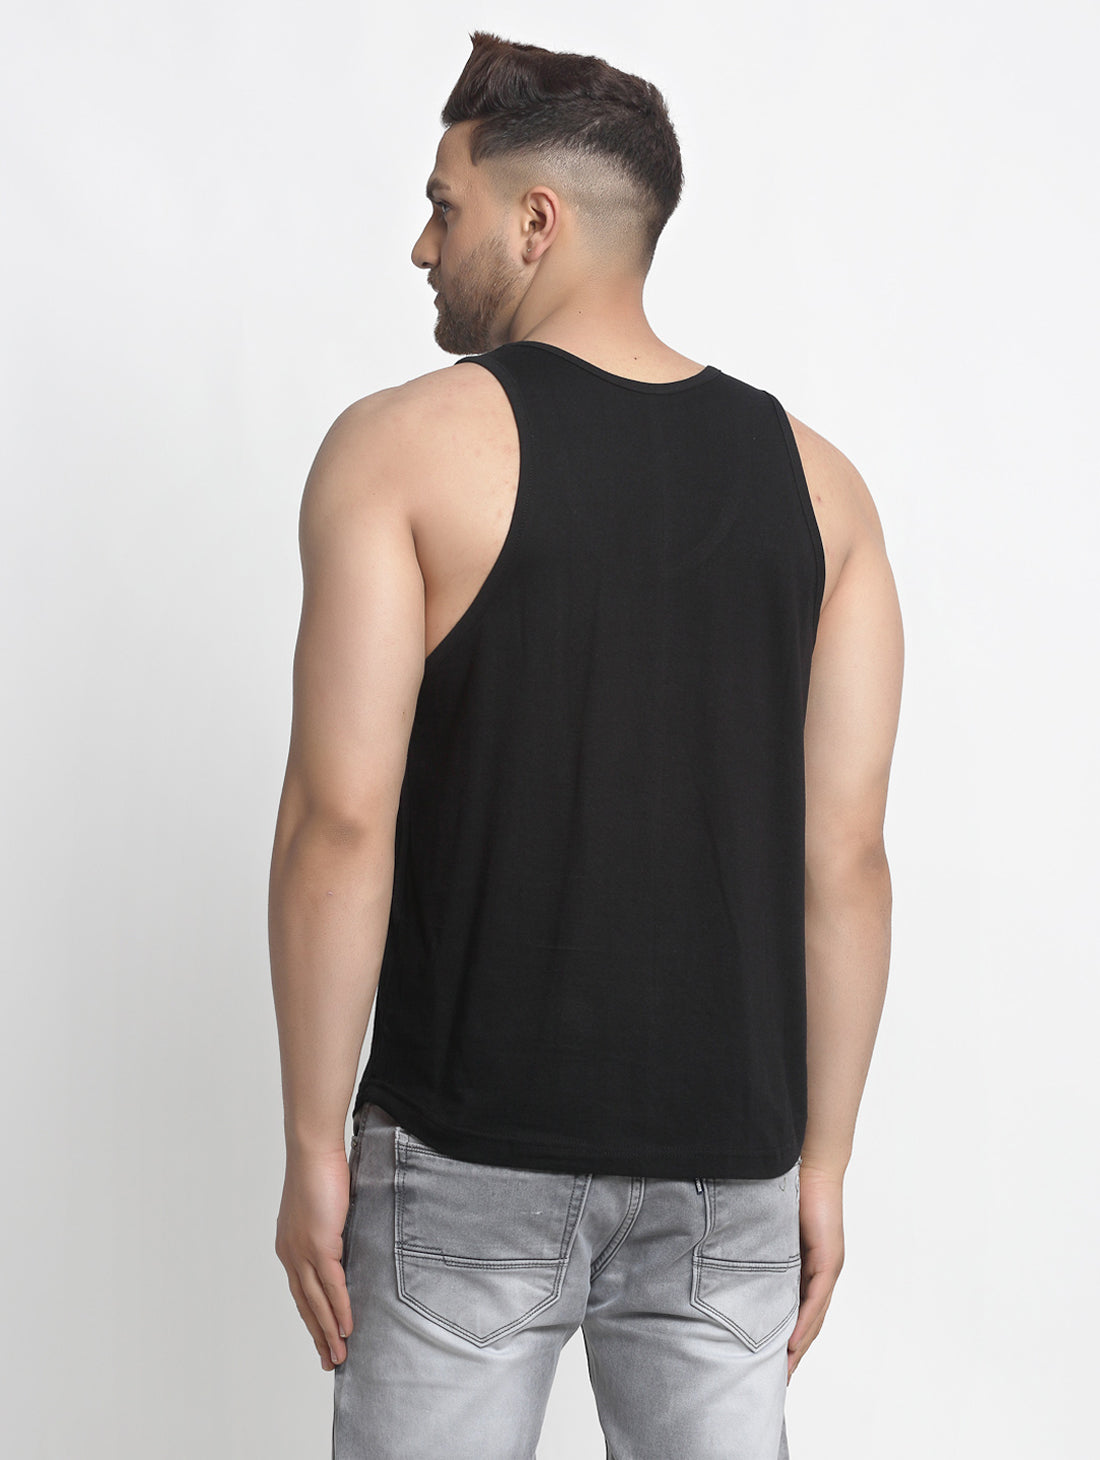 Men's Pack of 2 Black & White Printed Gym vest - Friskers